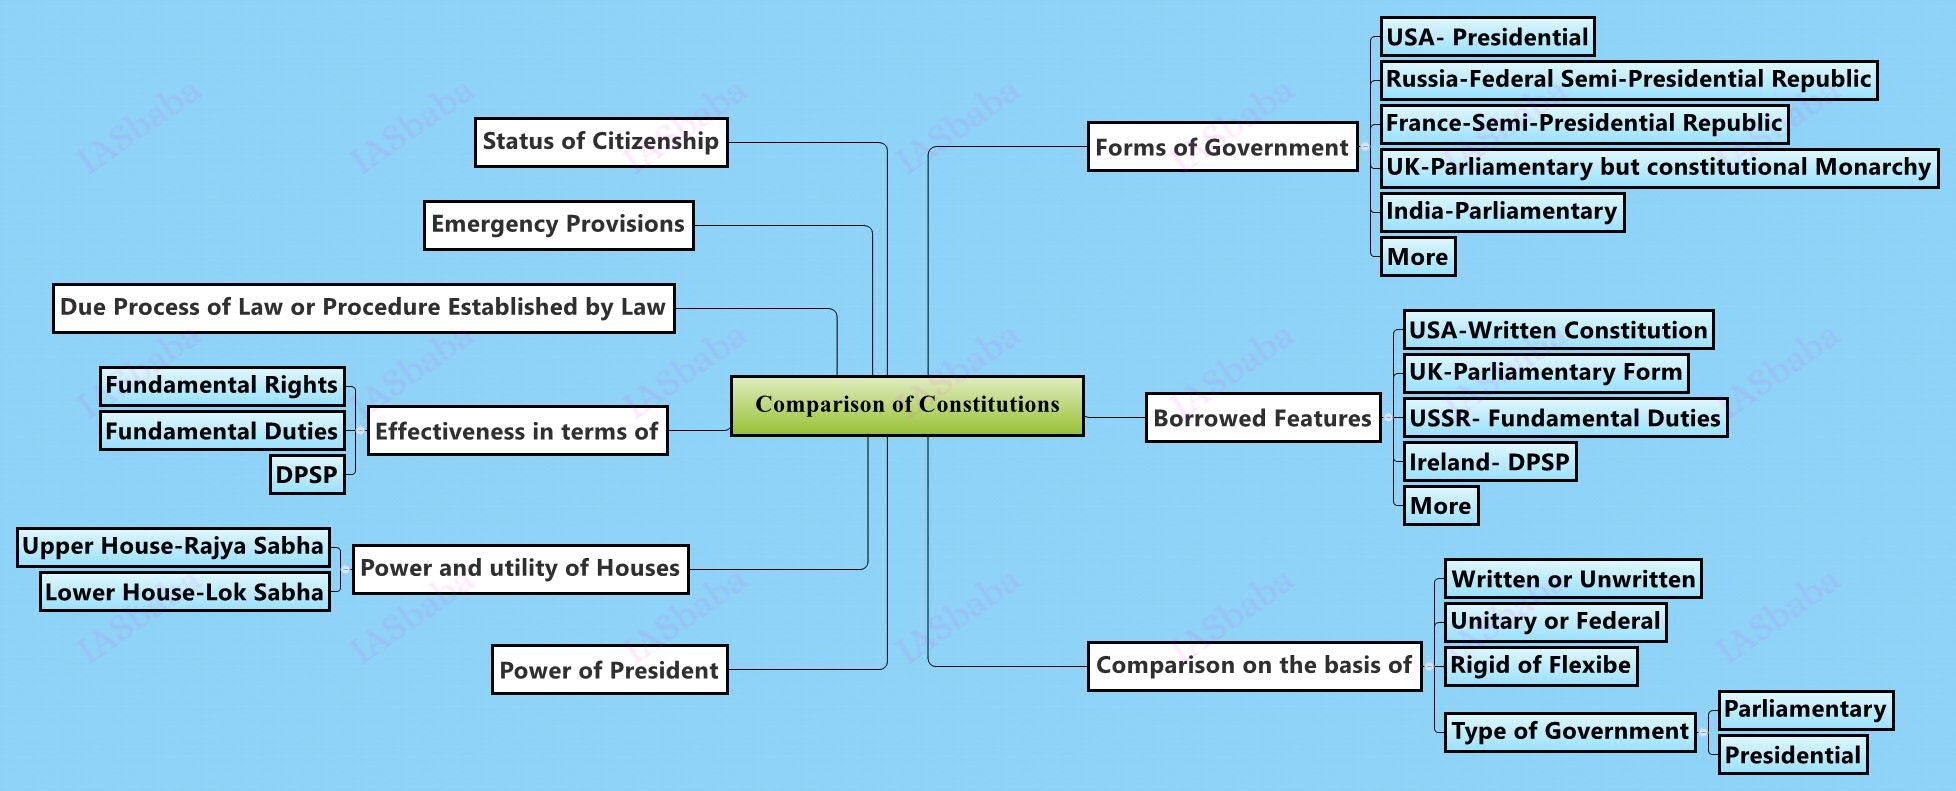 Comparison of Constitutions